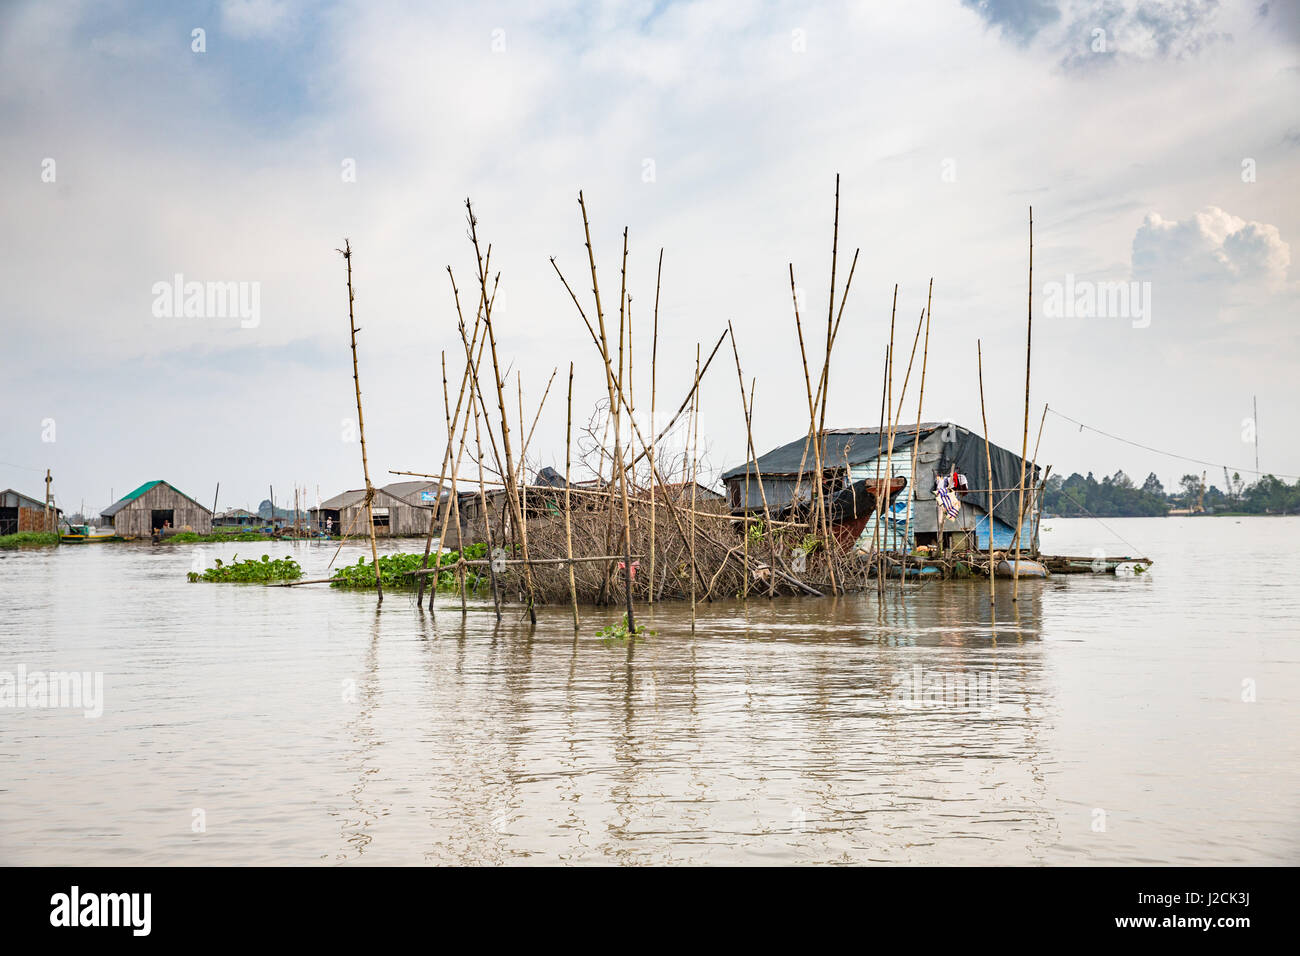 Bùi Hữu Cồn Sơn, près de Cần Thơ Nghĩa, capitale et plus grande ville dans le Mékong DeltaBy voile vous traverserez le Mékong pour l'île. Maisons de pêcheurs Banque D'Images